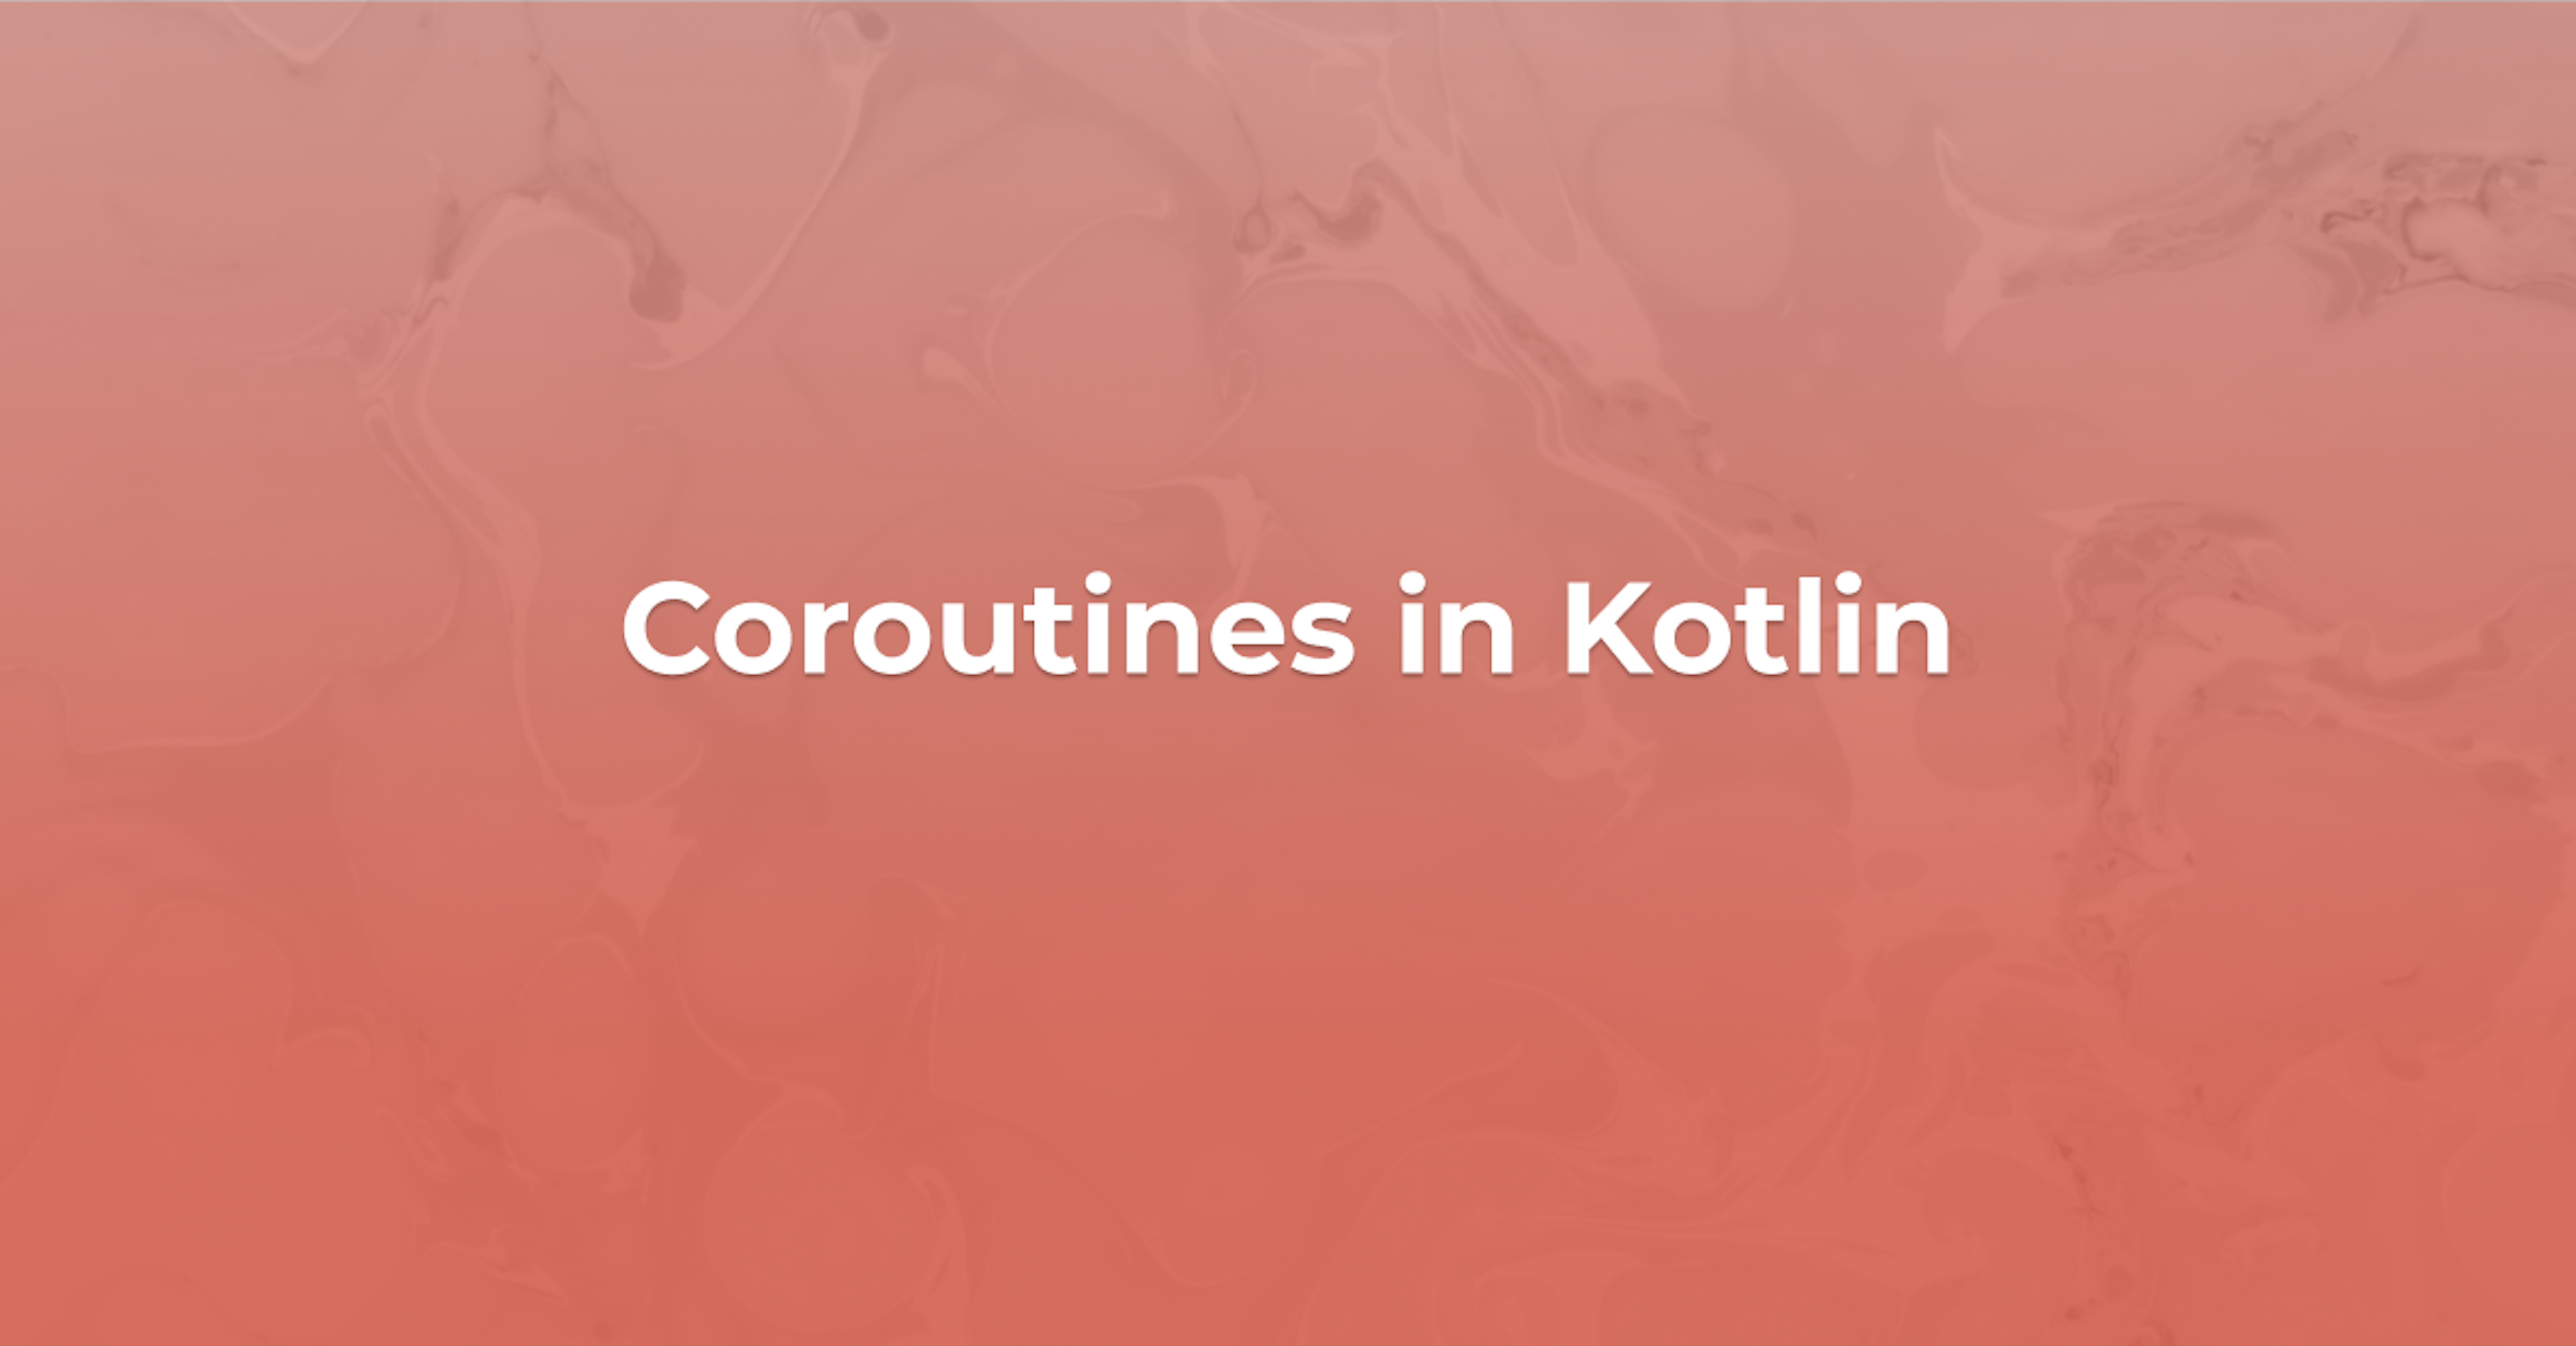 Coroutines in Kotlin